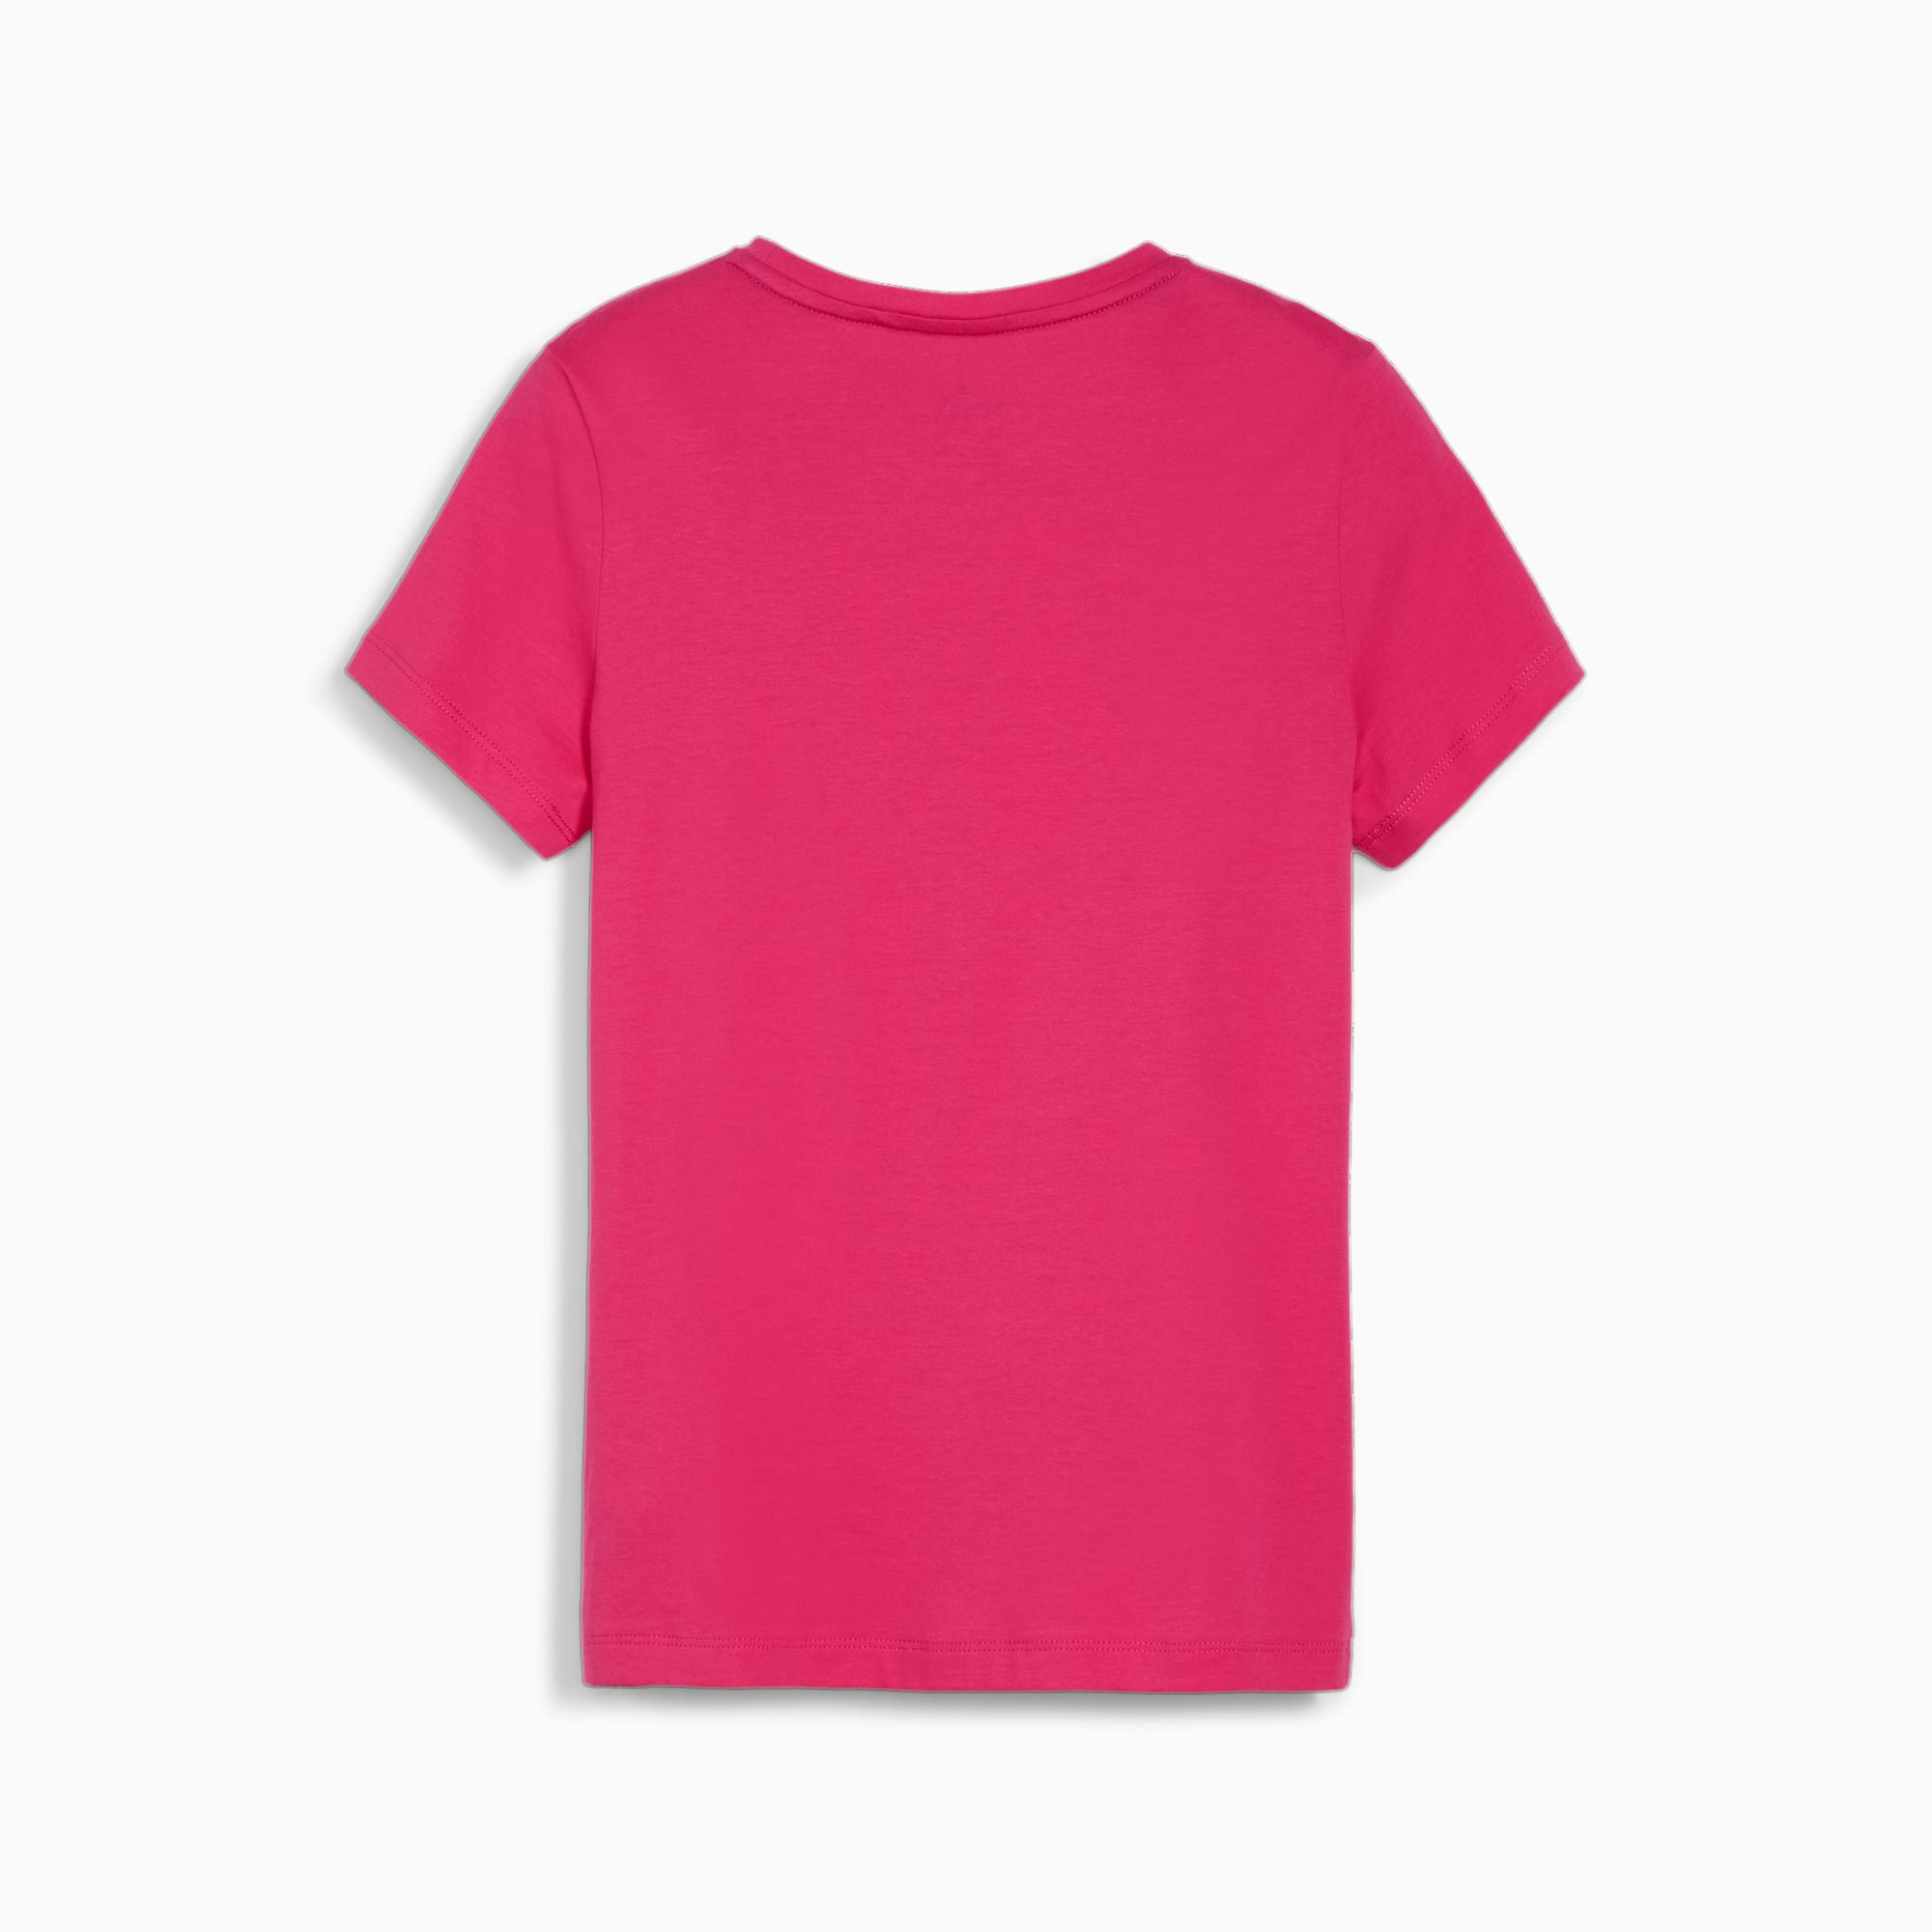 PUMA Essentials Logo Youth T-Shirt, Garnet Rose, Size 92, Clothing